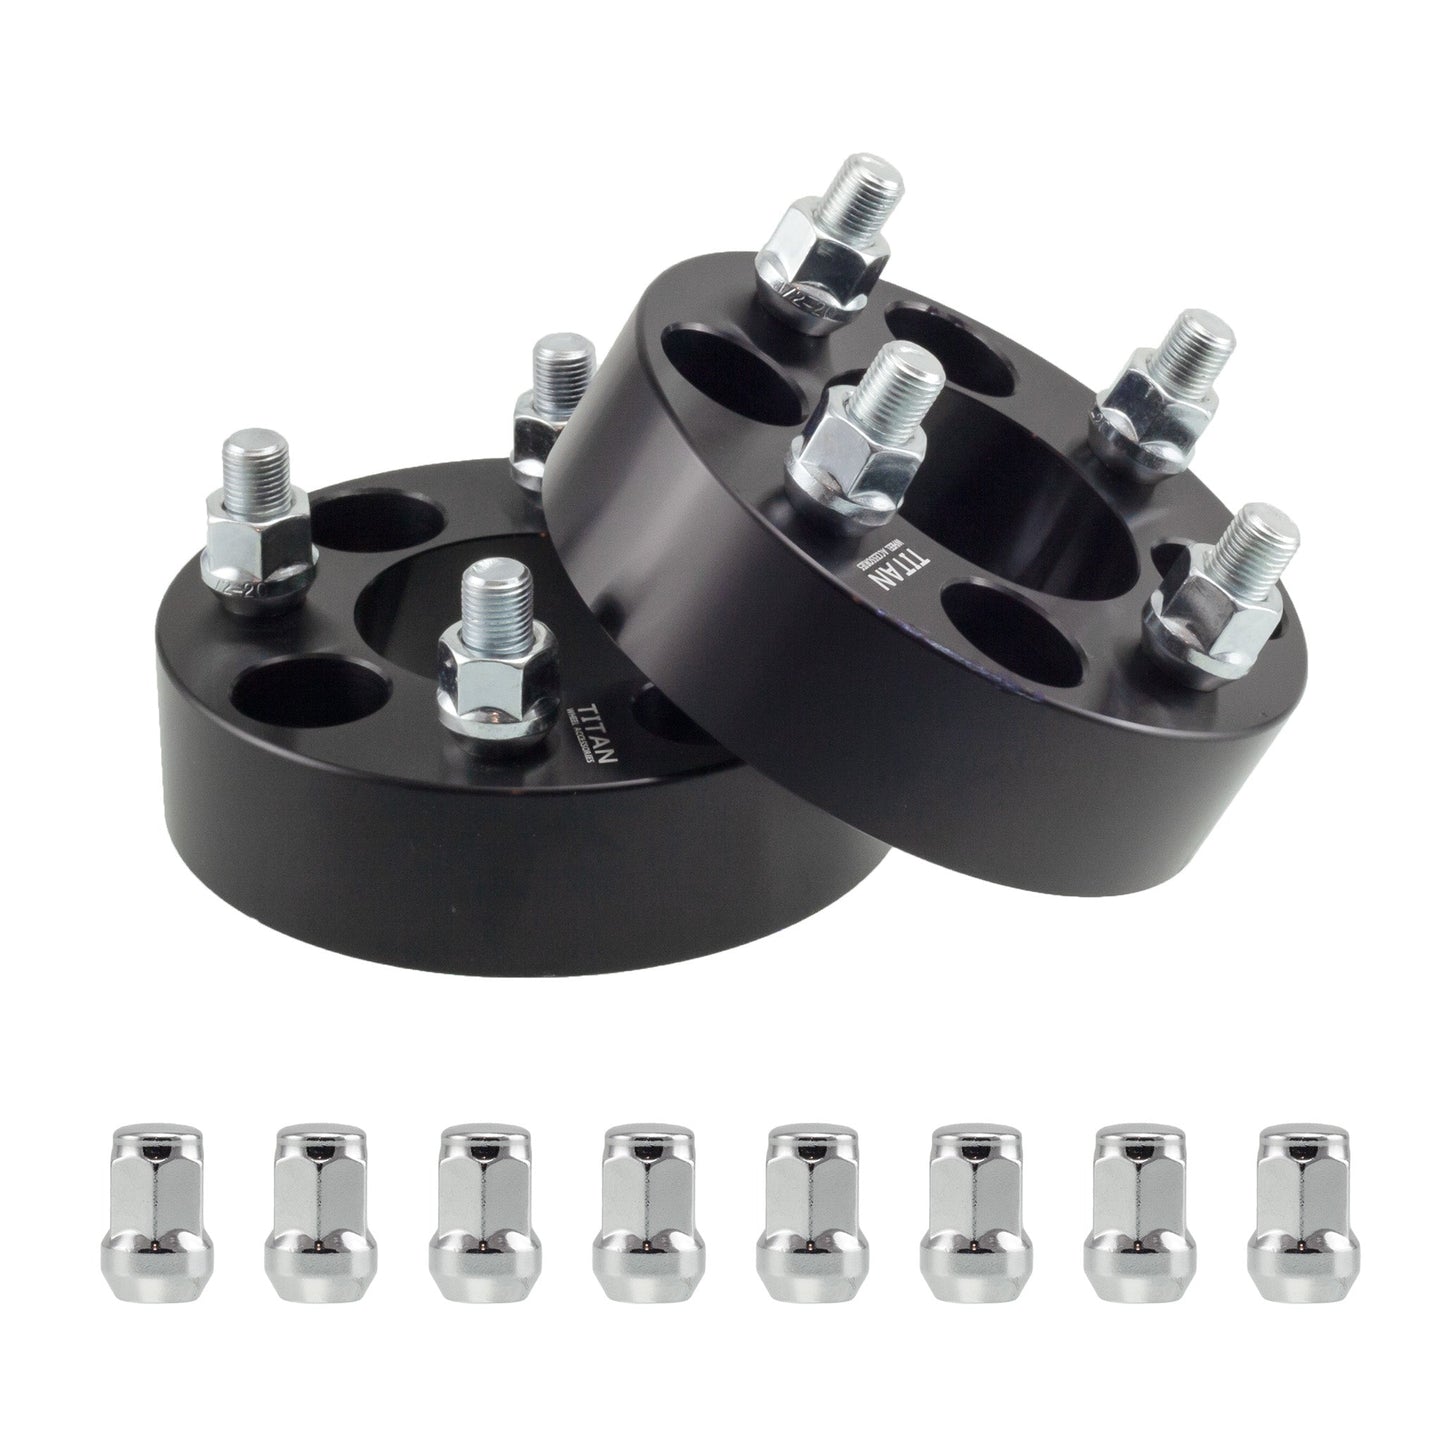 25mm (1") Titan 4x114.3 to 4x100 Wheel Adapters | 12x1.5 Studs | Titan Wheel Accessories